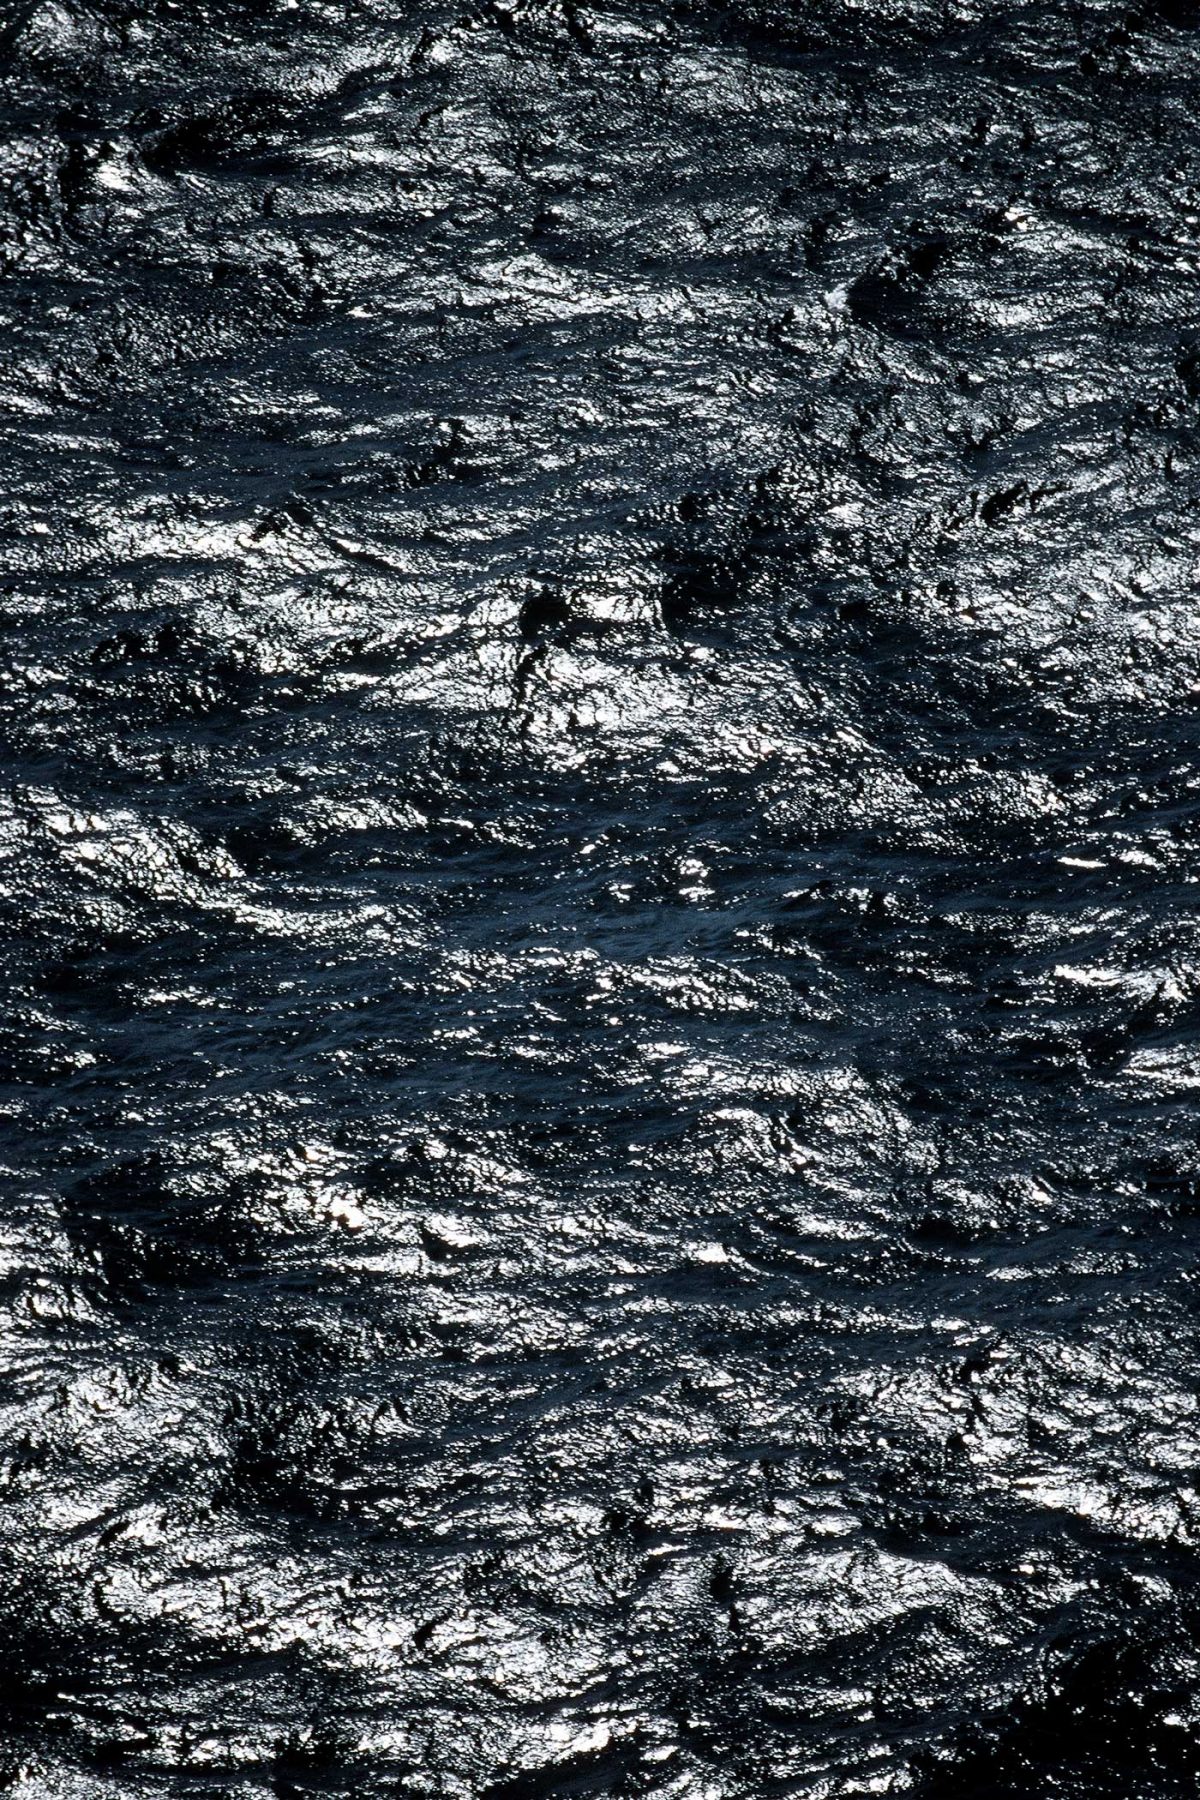 Aerial von Wasser, Atlantischer Ozean. Derek Henthorn - Fotograf München